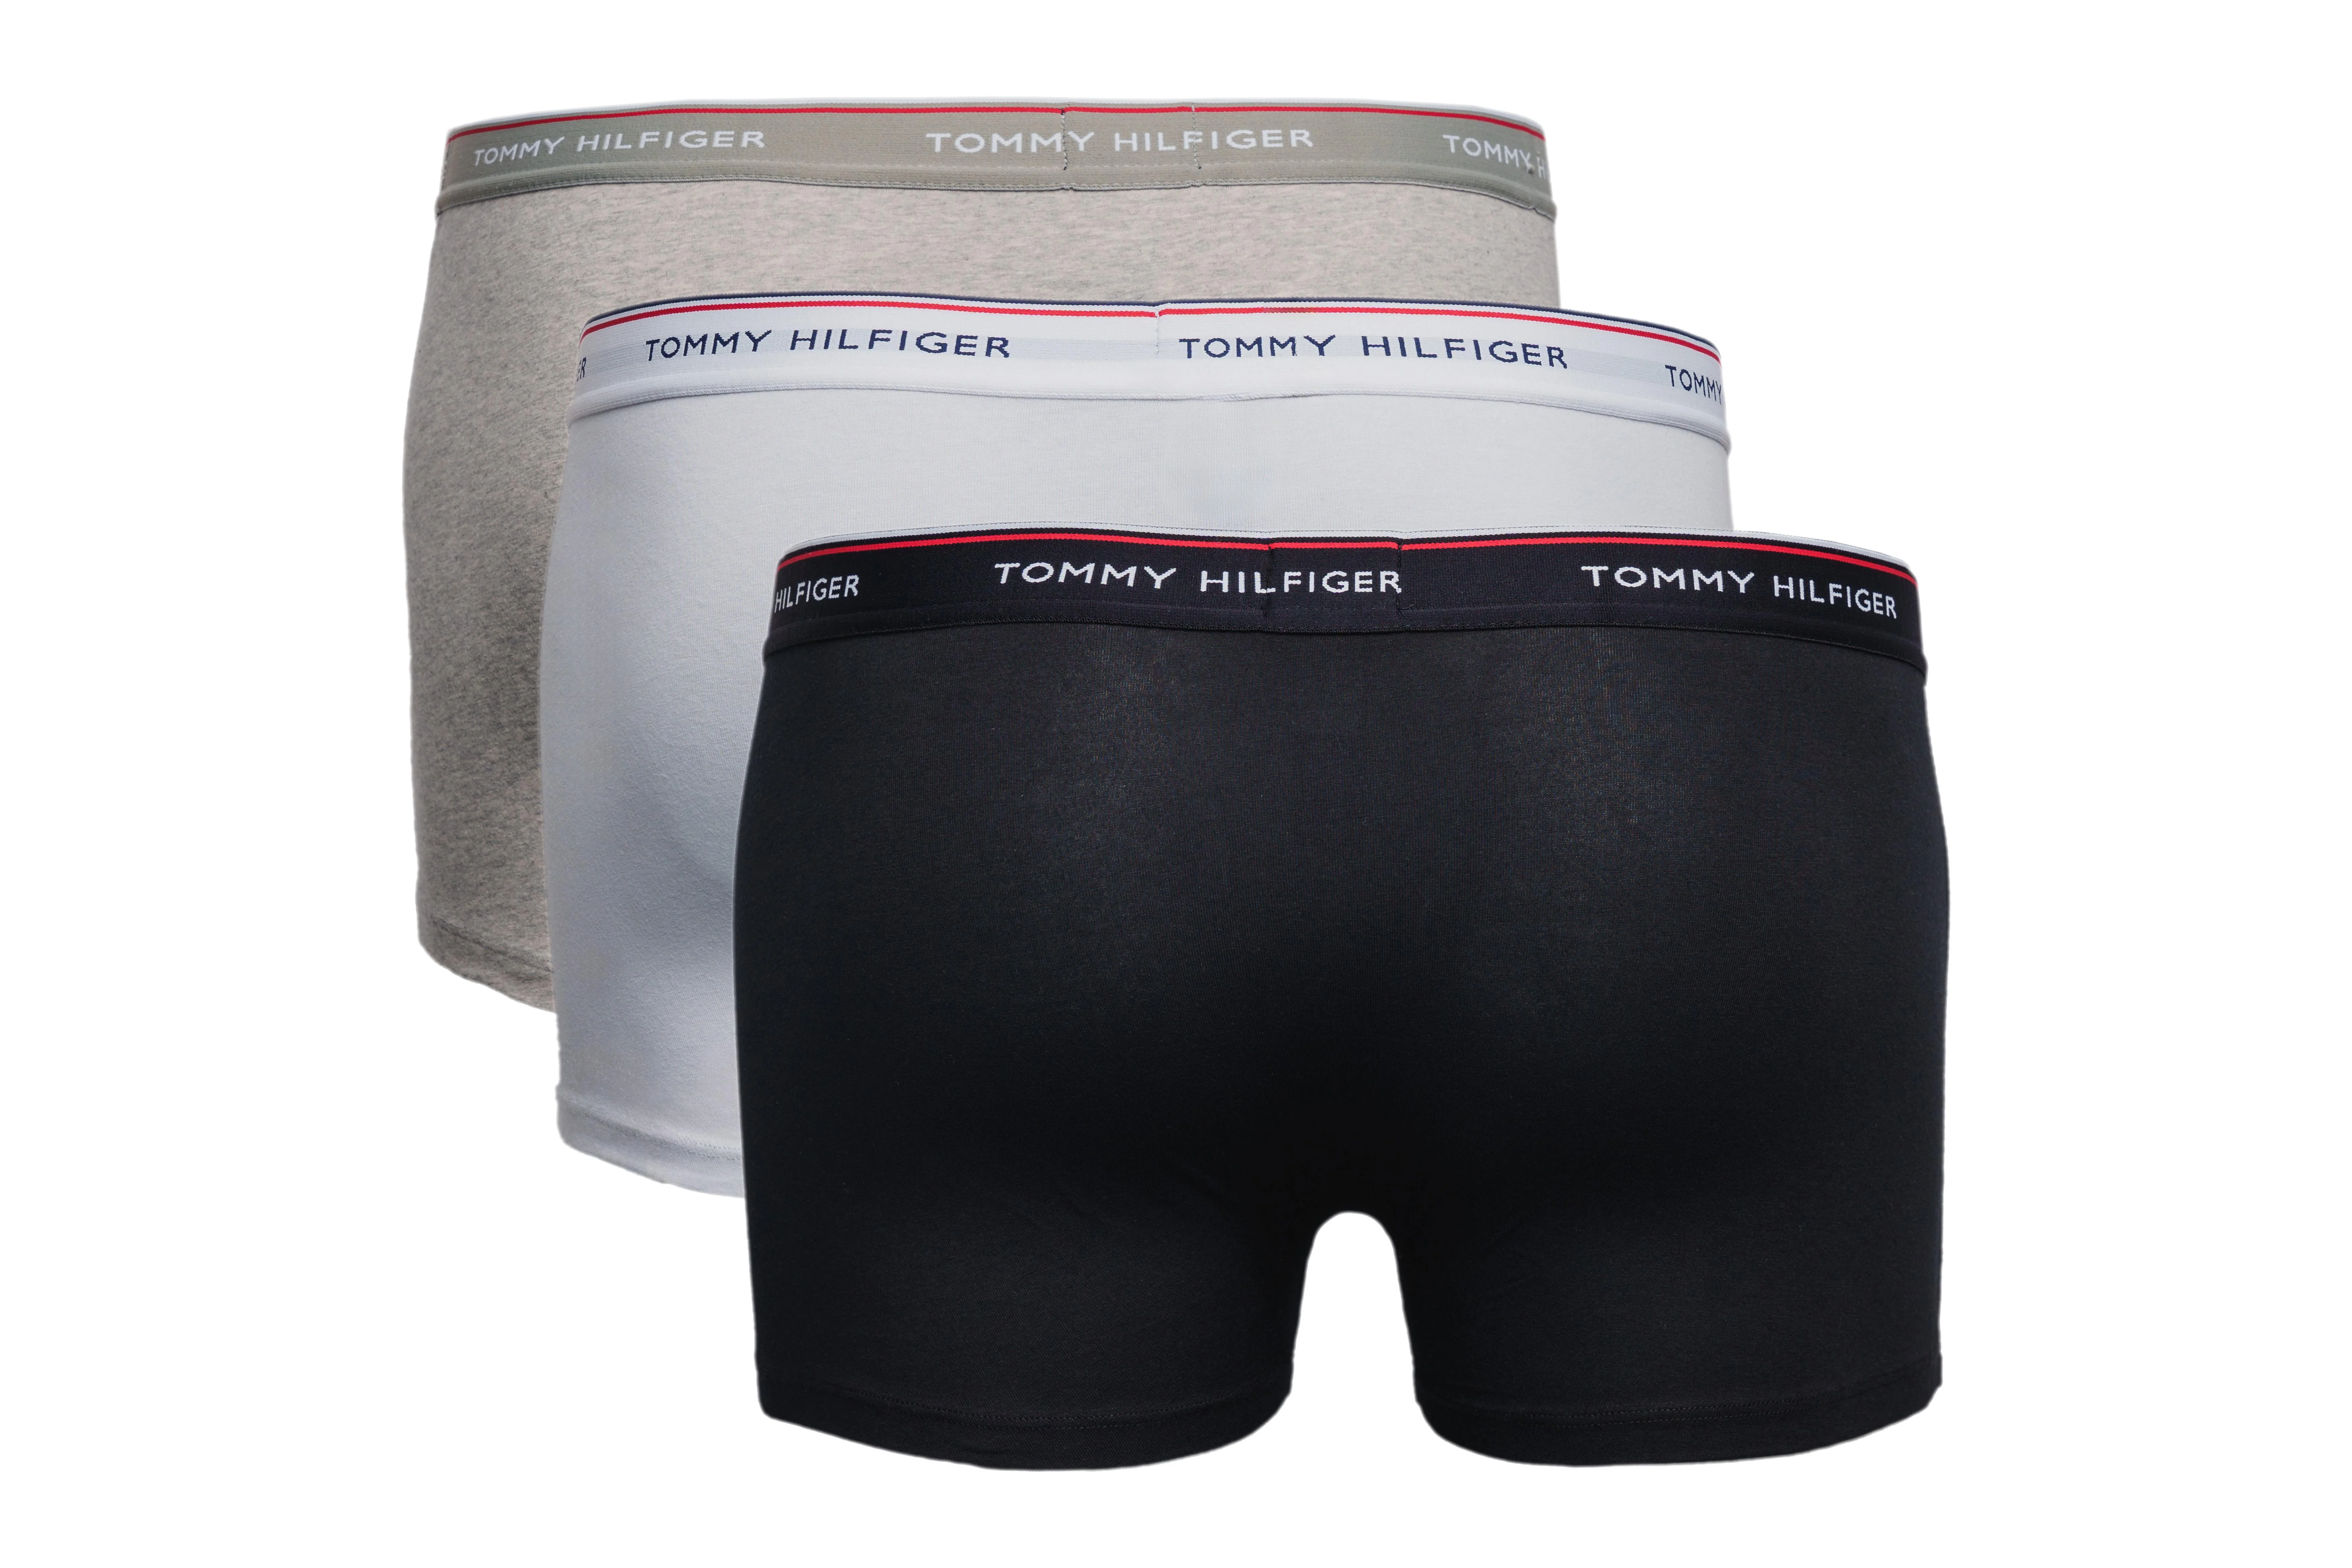 TOMMY HILFIGER 3er-Pack Boxershorts, Farbe schwarz, weiß, grau, Größe M